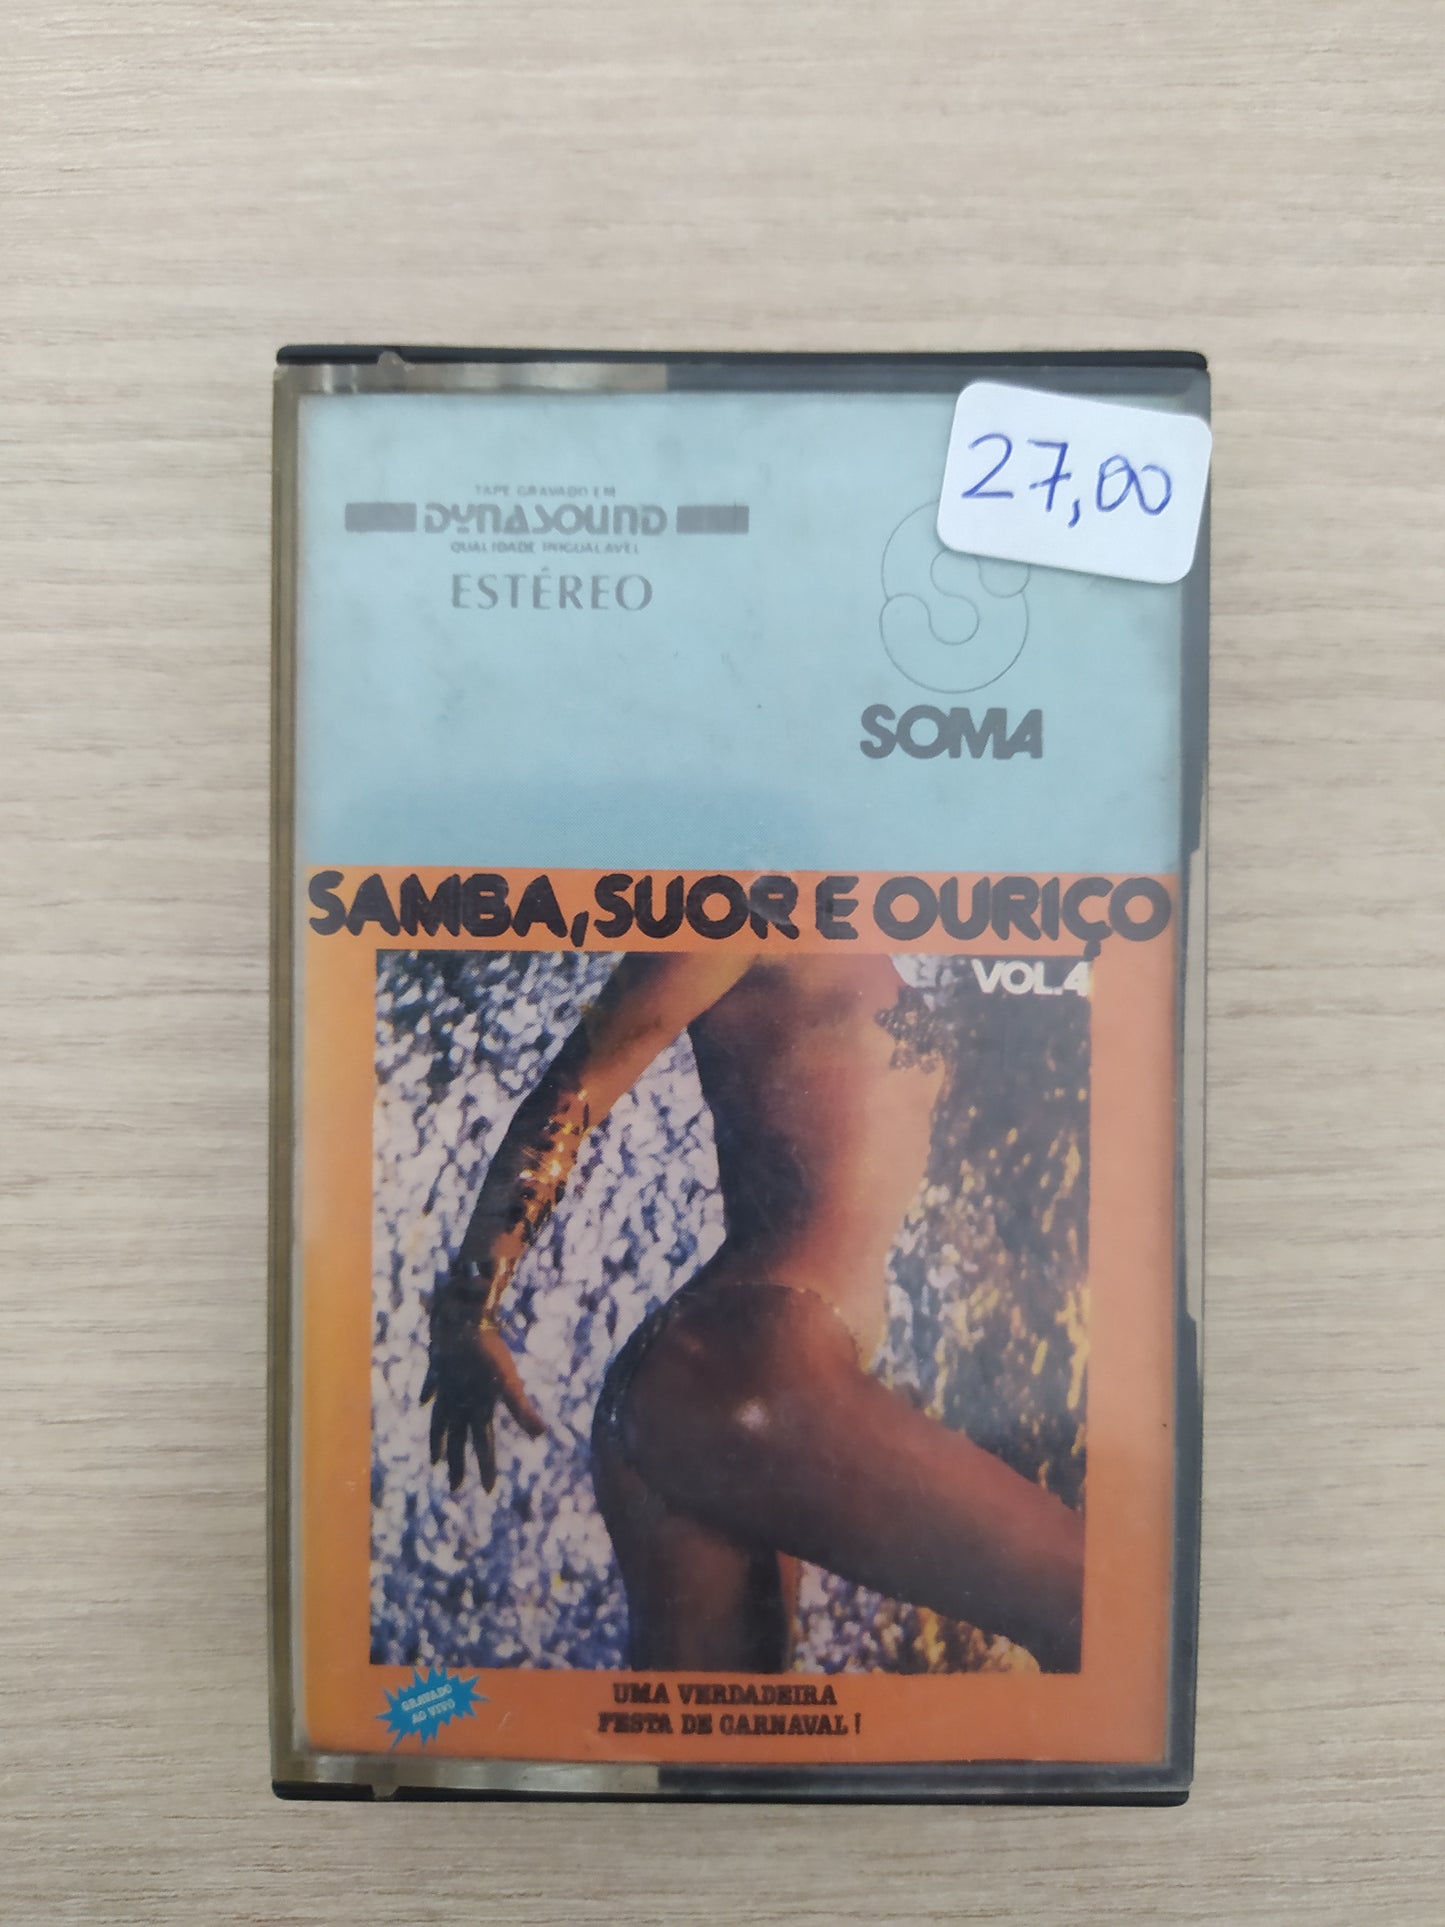 Fita K7 Cassete Samba, Suor e Ouriço Vol. 4